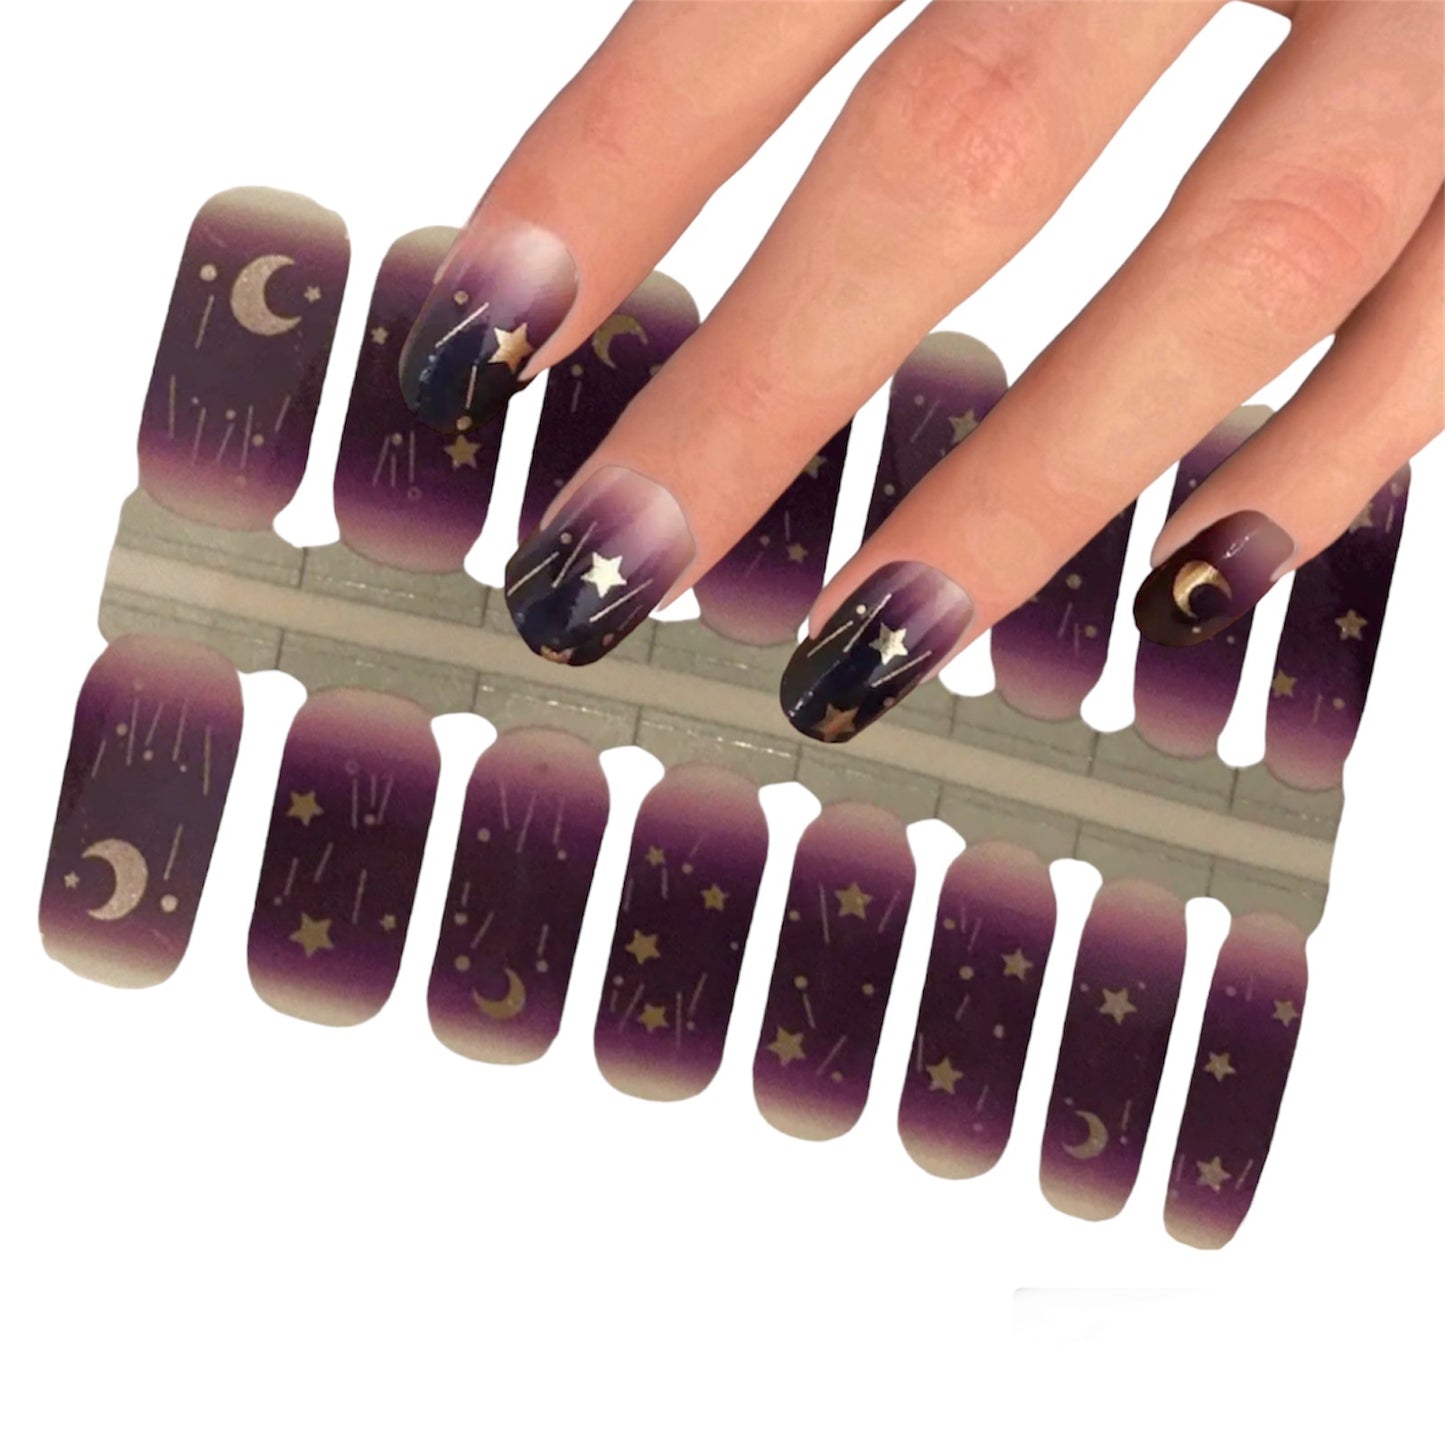 Good night | Nail Wraps | Nail Stickers | Nail Strips | Gel Nails | Nail Polish Wraps - Nailfordable